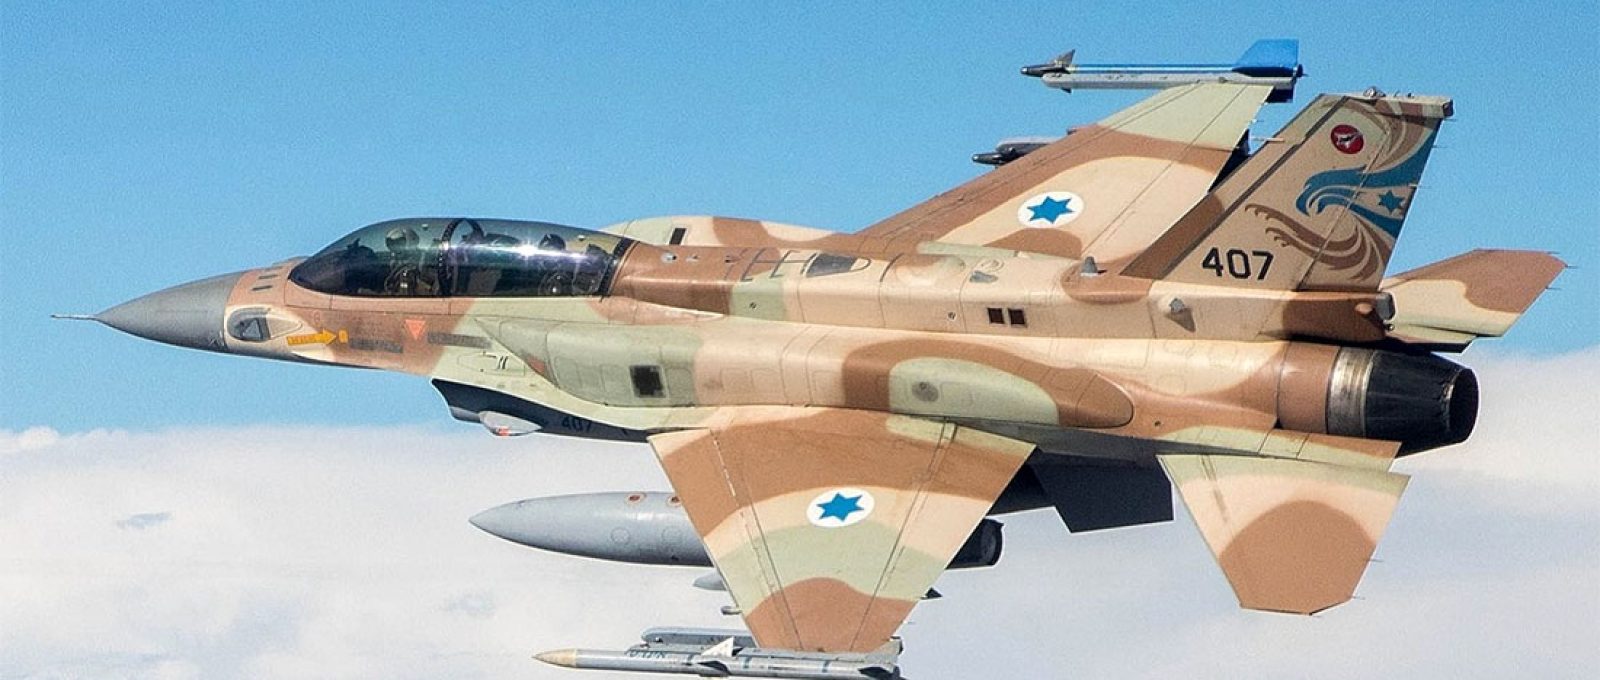 F-16 Sufa da Força Aérea israelense (IDF).